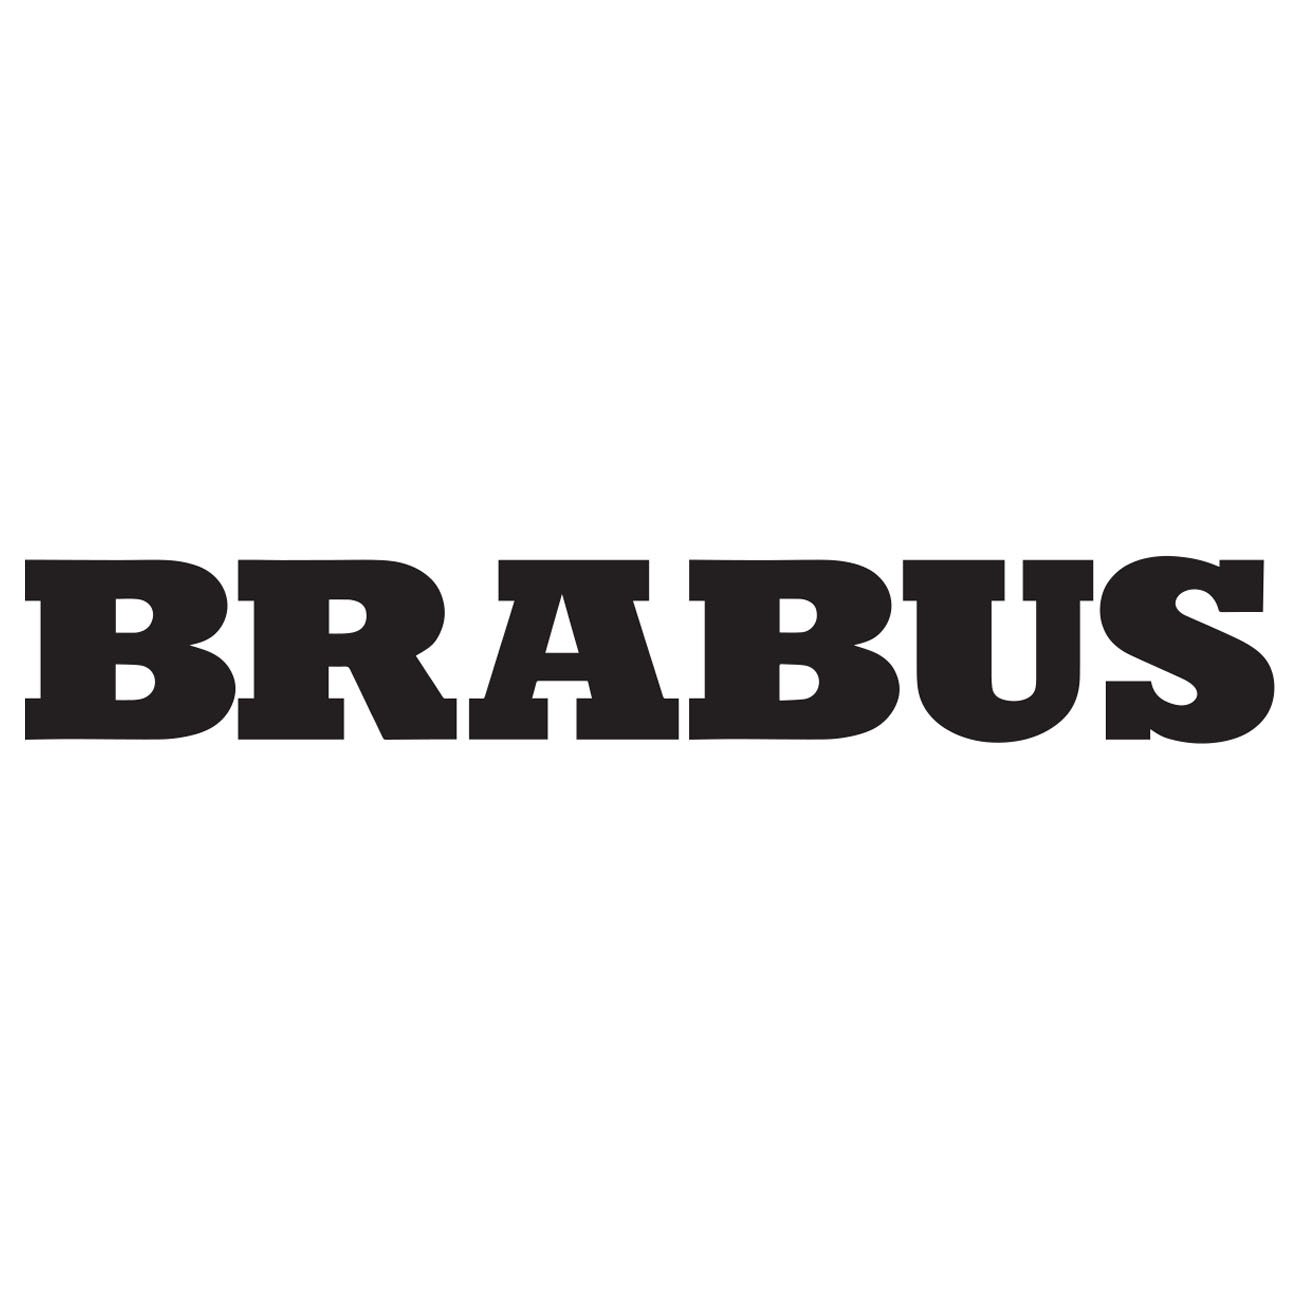 Brabus logo